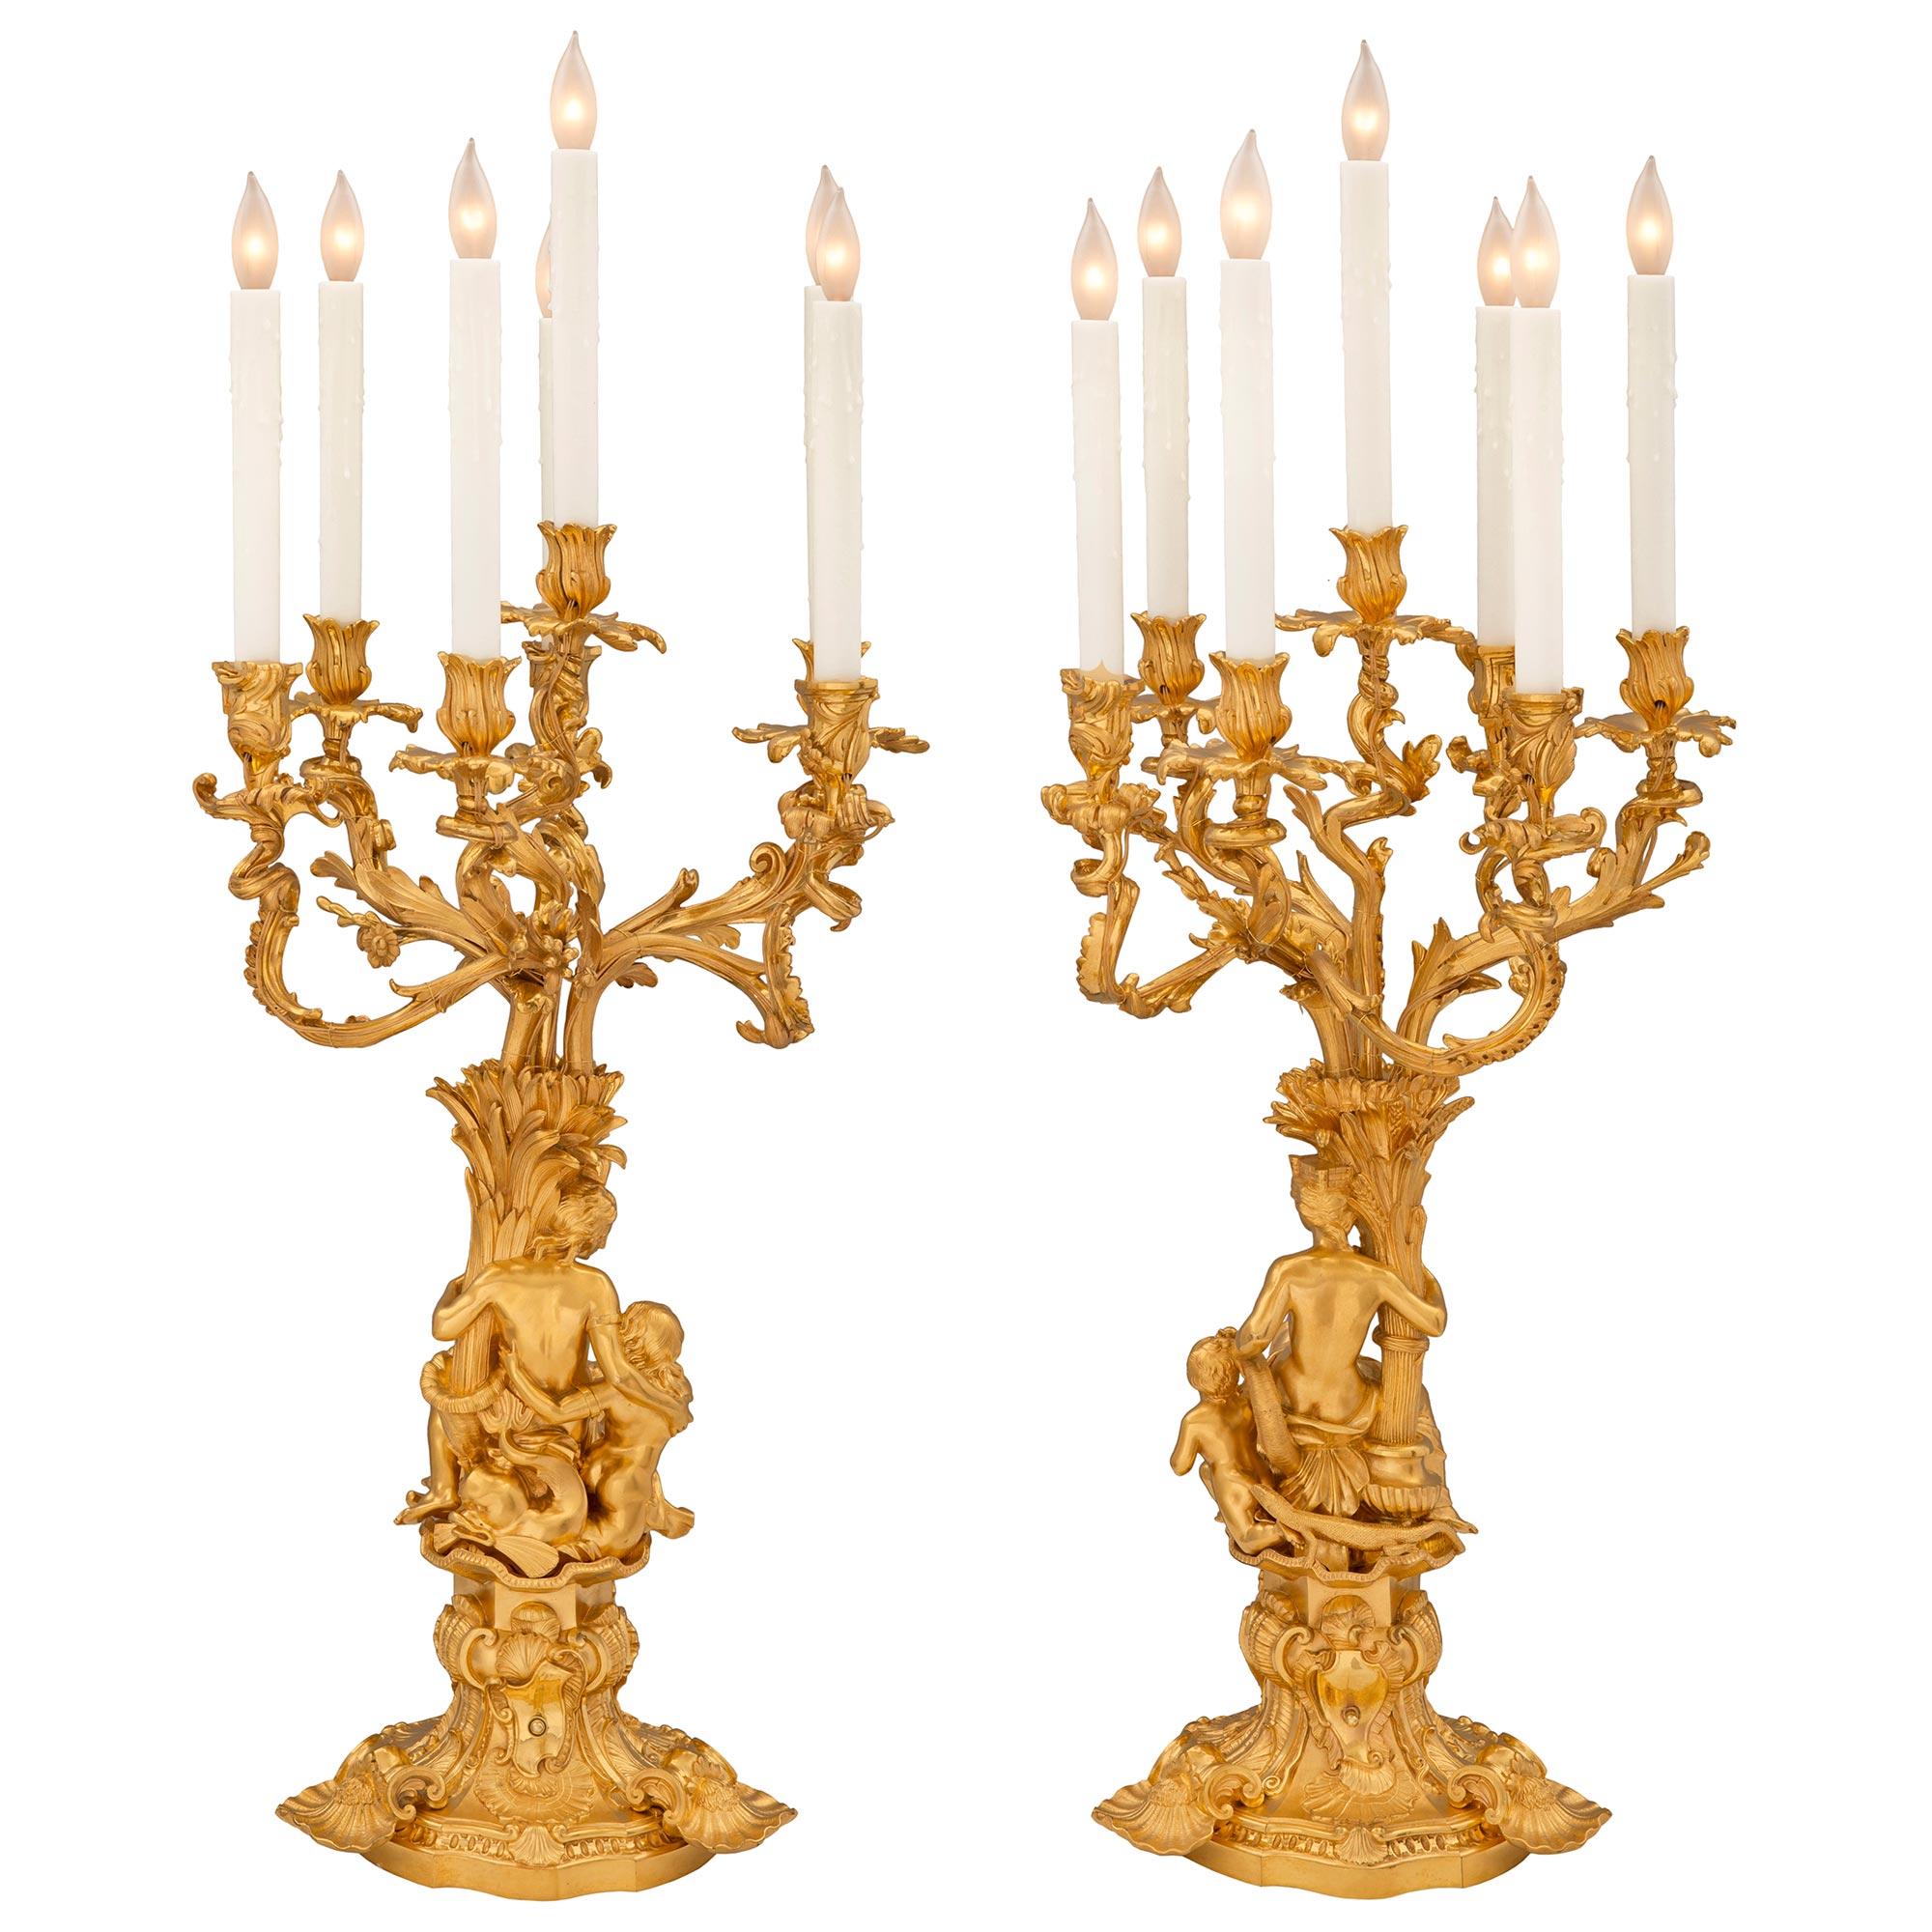 Une paire de lampes candélabres en bronze doré Louis XV de grande taille et de très haute qualité. Chaque candélabre à sept bras est surélevé par une belle base festonnée merveilleusement exécutée avec une fine bordure cannelée mouchetée avec trois